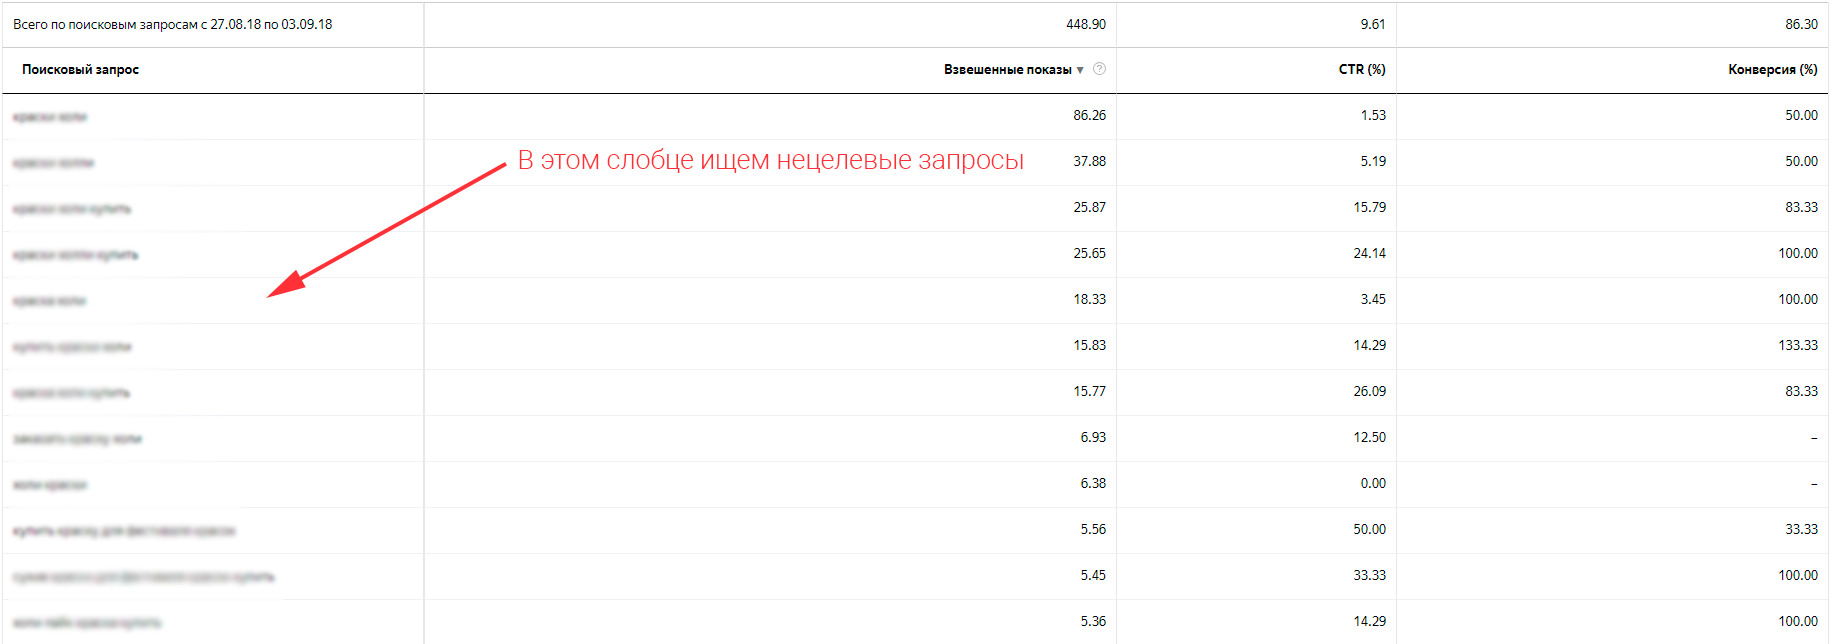 Статистика по поисковым запросам в Яндекс.Директ